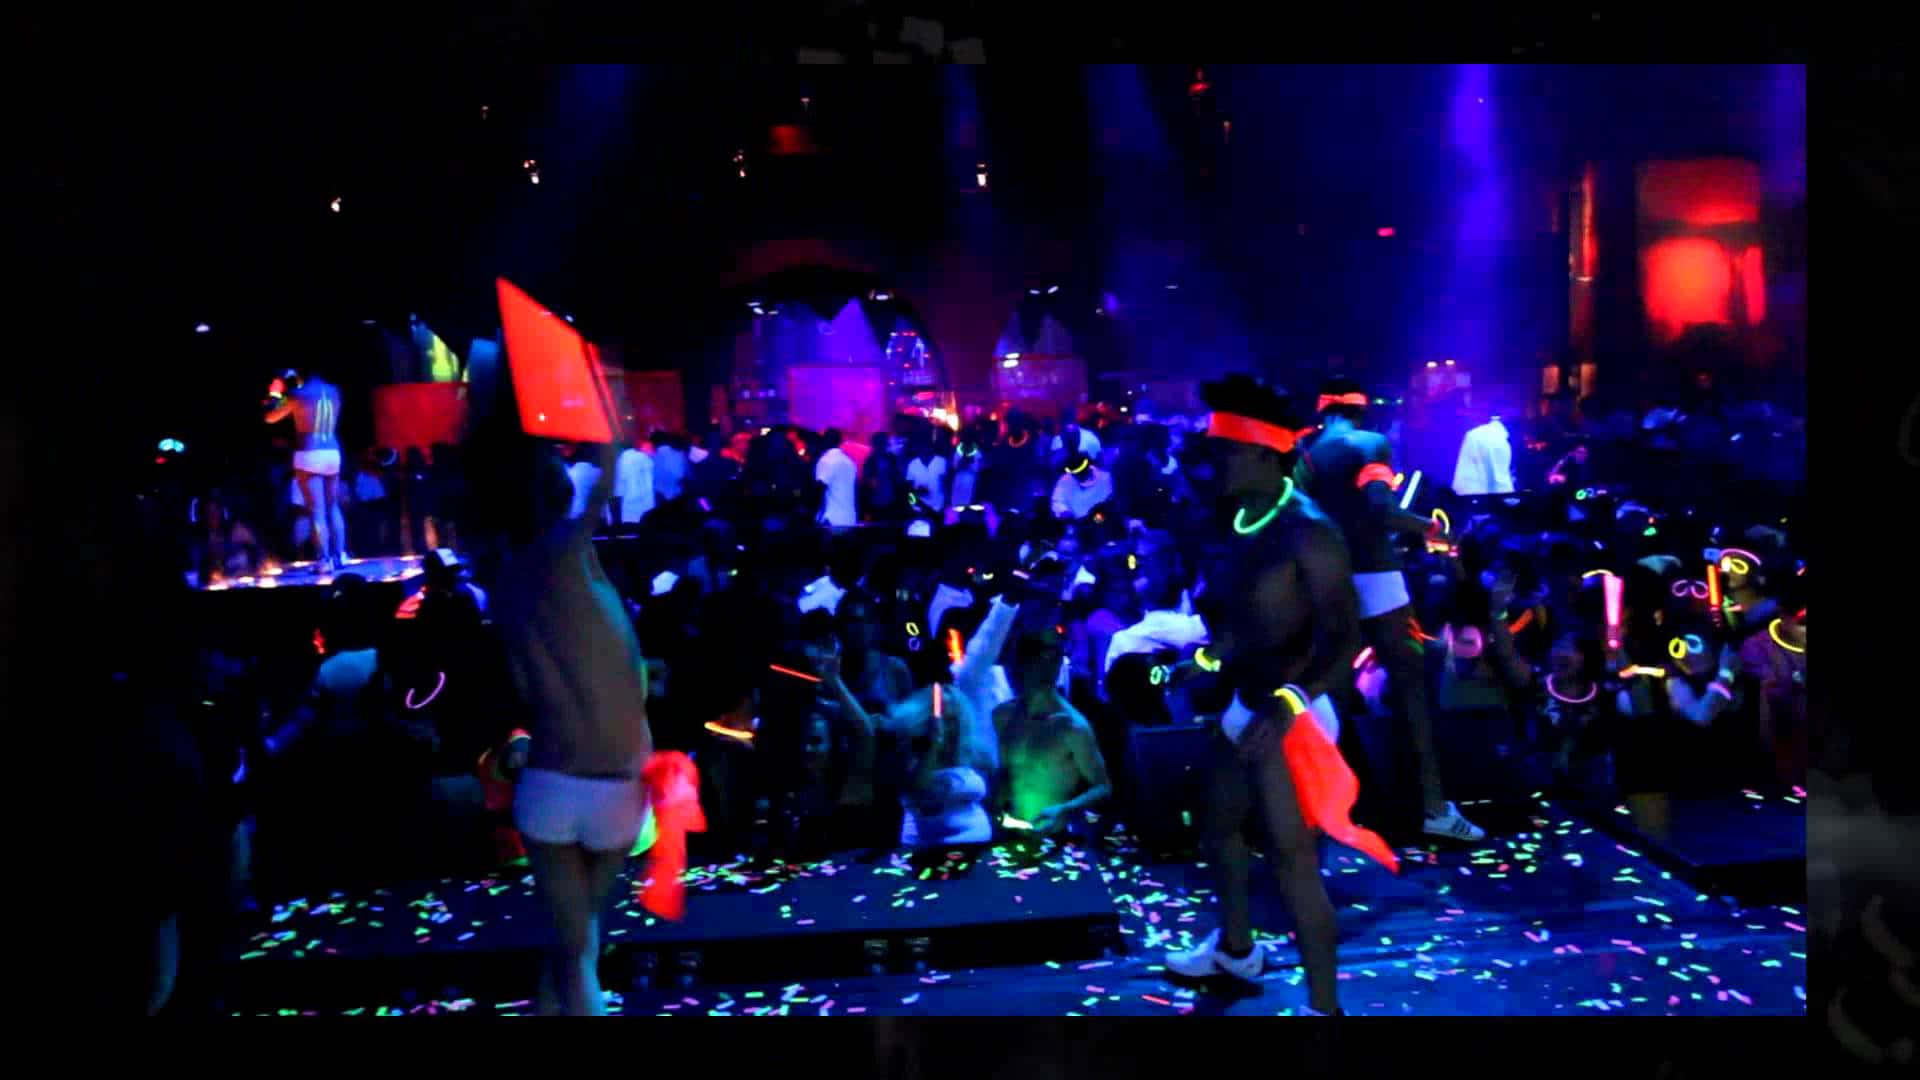 Vibrant Neon Party Scene.jpg Wallpaper